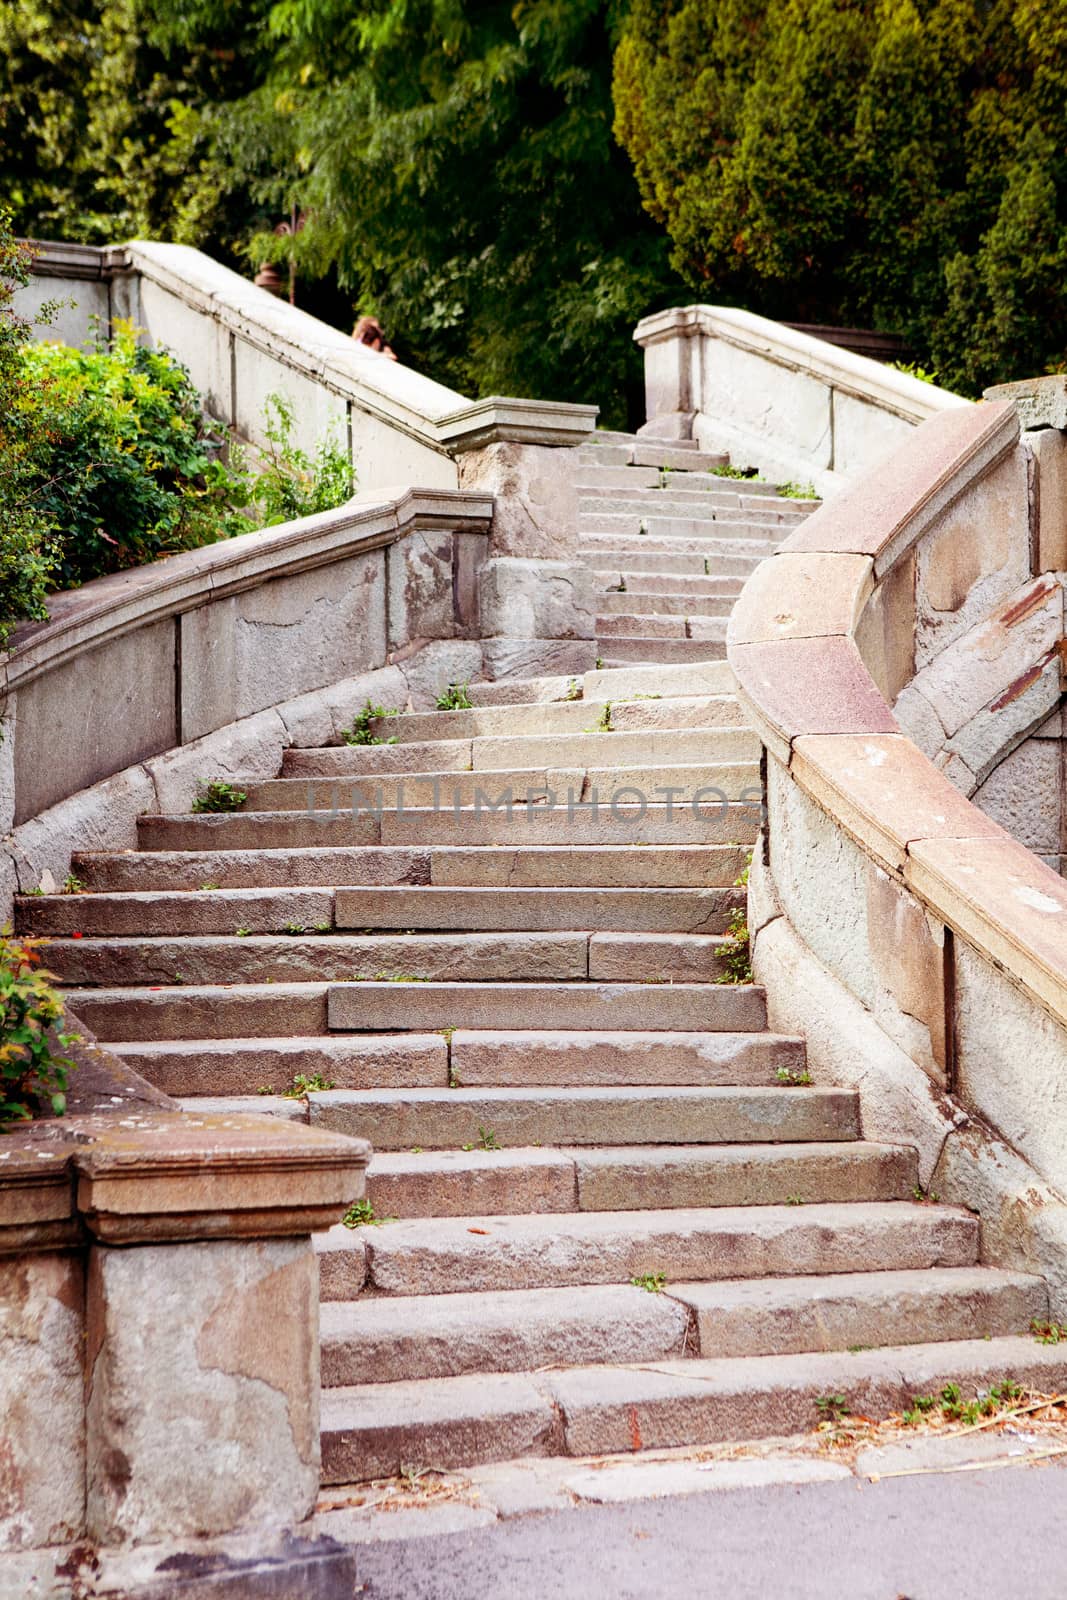 stone staircase  by vsurkov